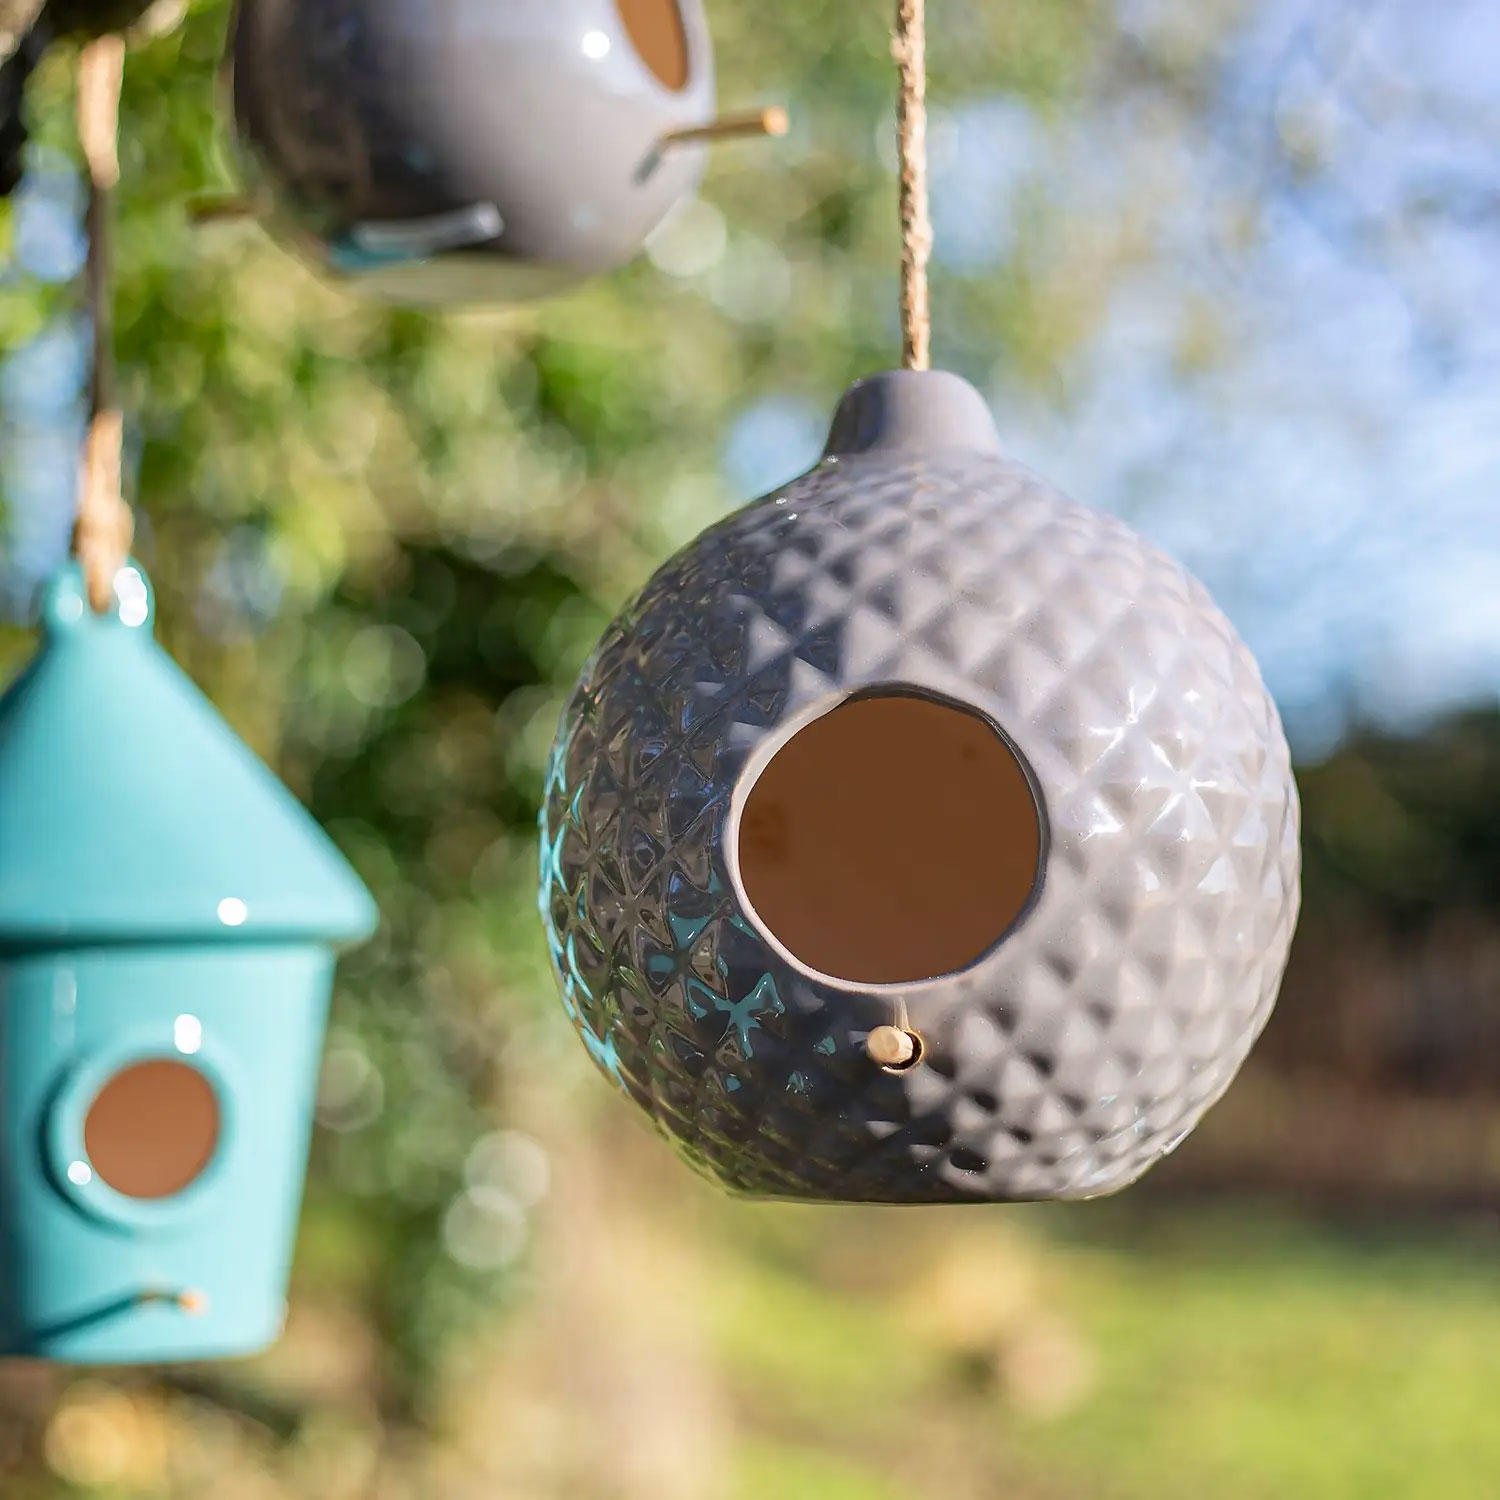 Three modern bird feeders hanging in a garden